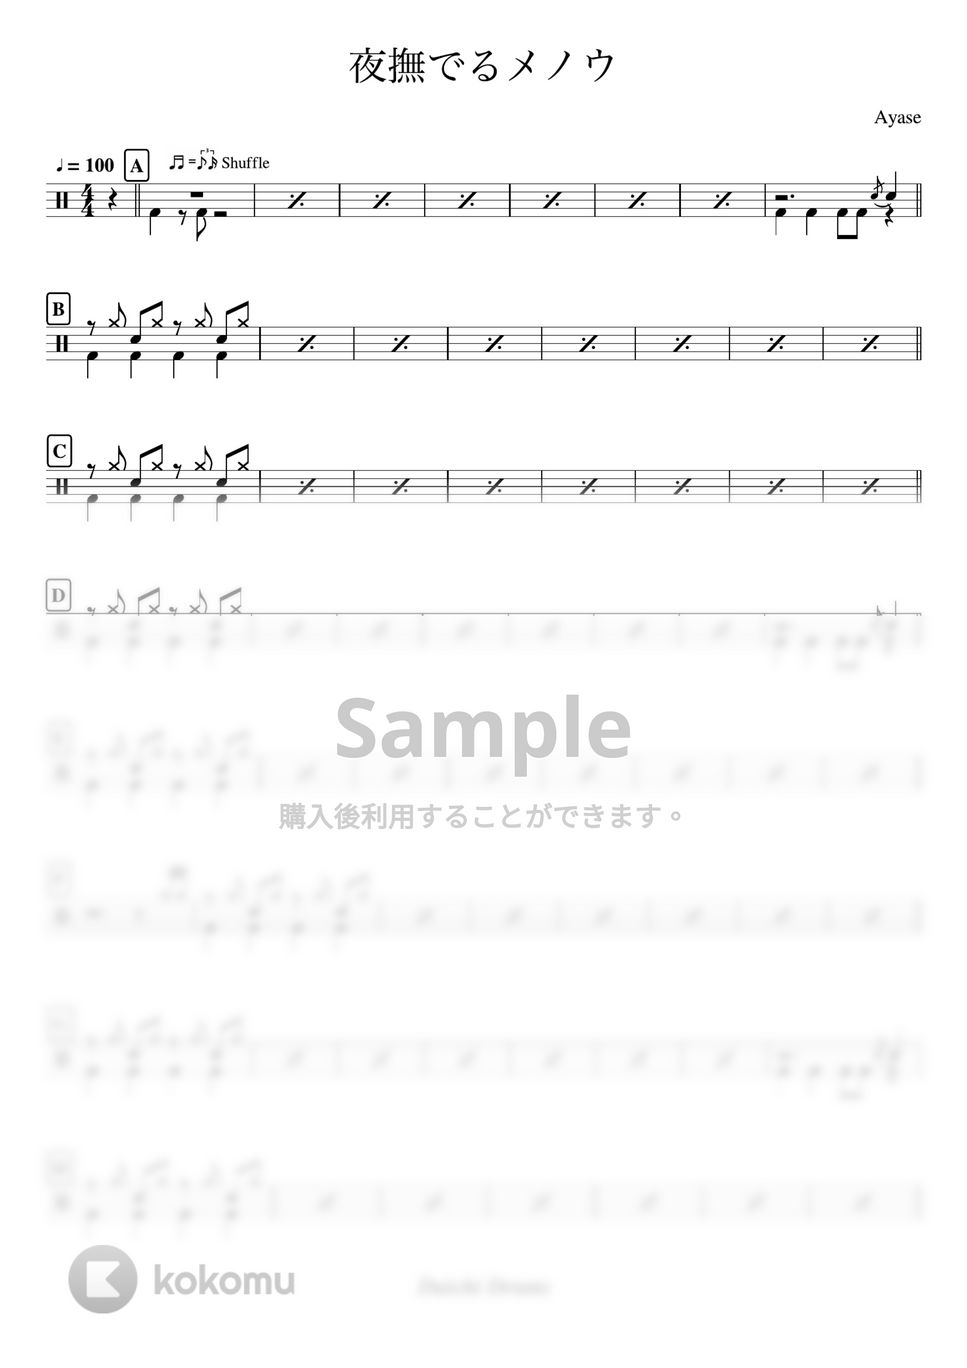 Ayase - 夜撫でるメノウ by Daichi Drums